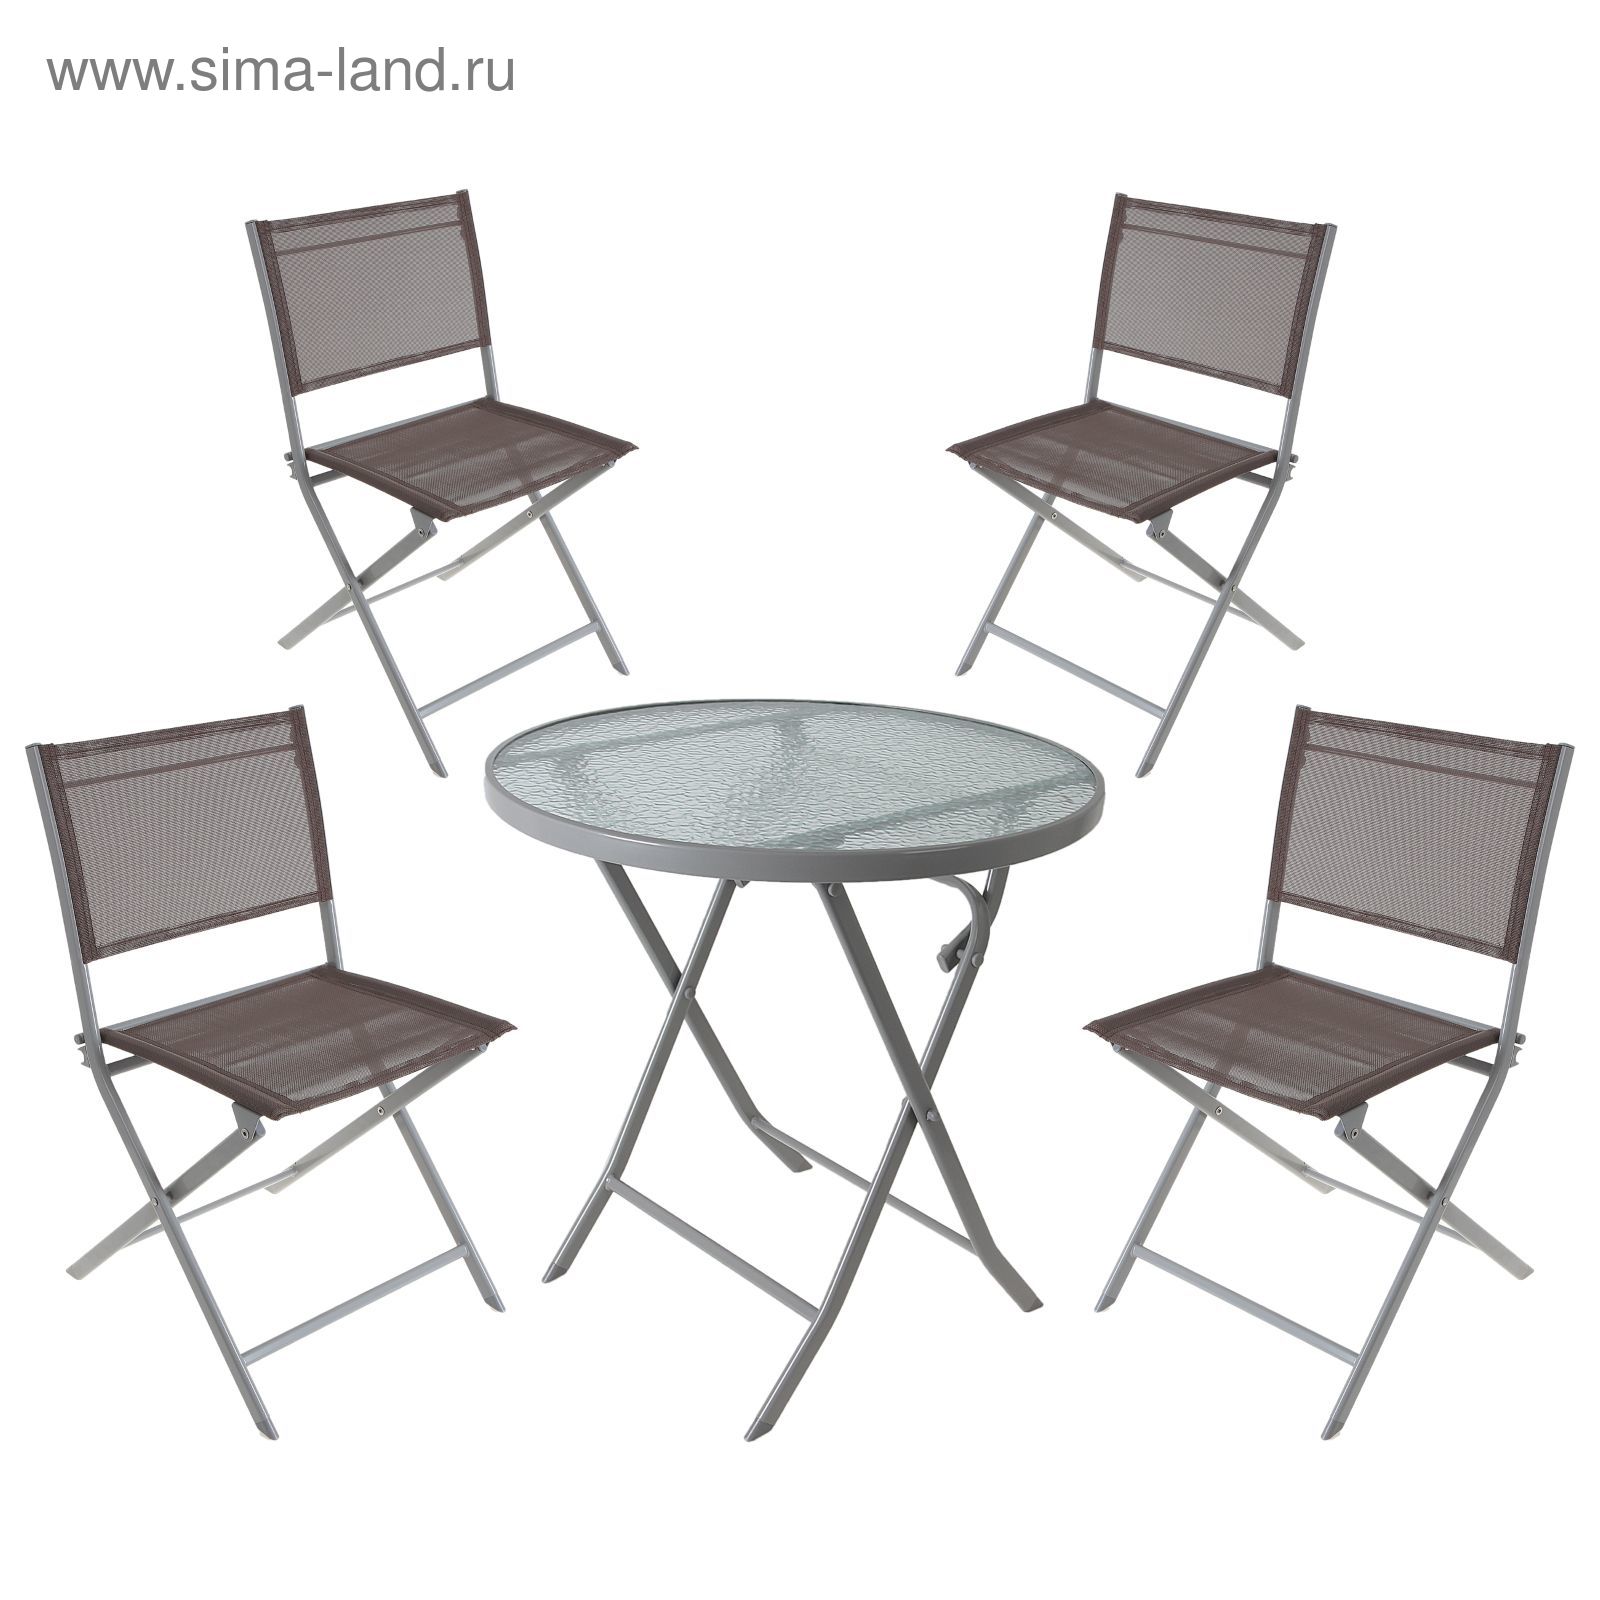 Набор: стол, размер 70 х 71 см, 4 стула, размер 56 х 45 х 80 см